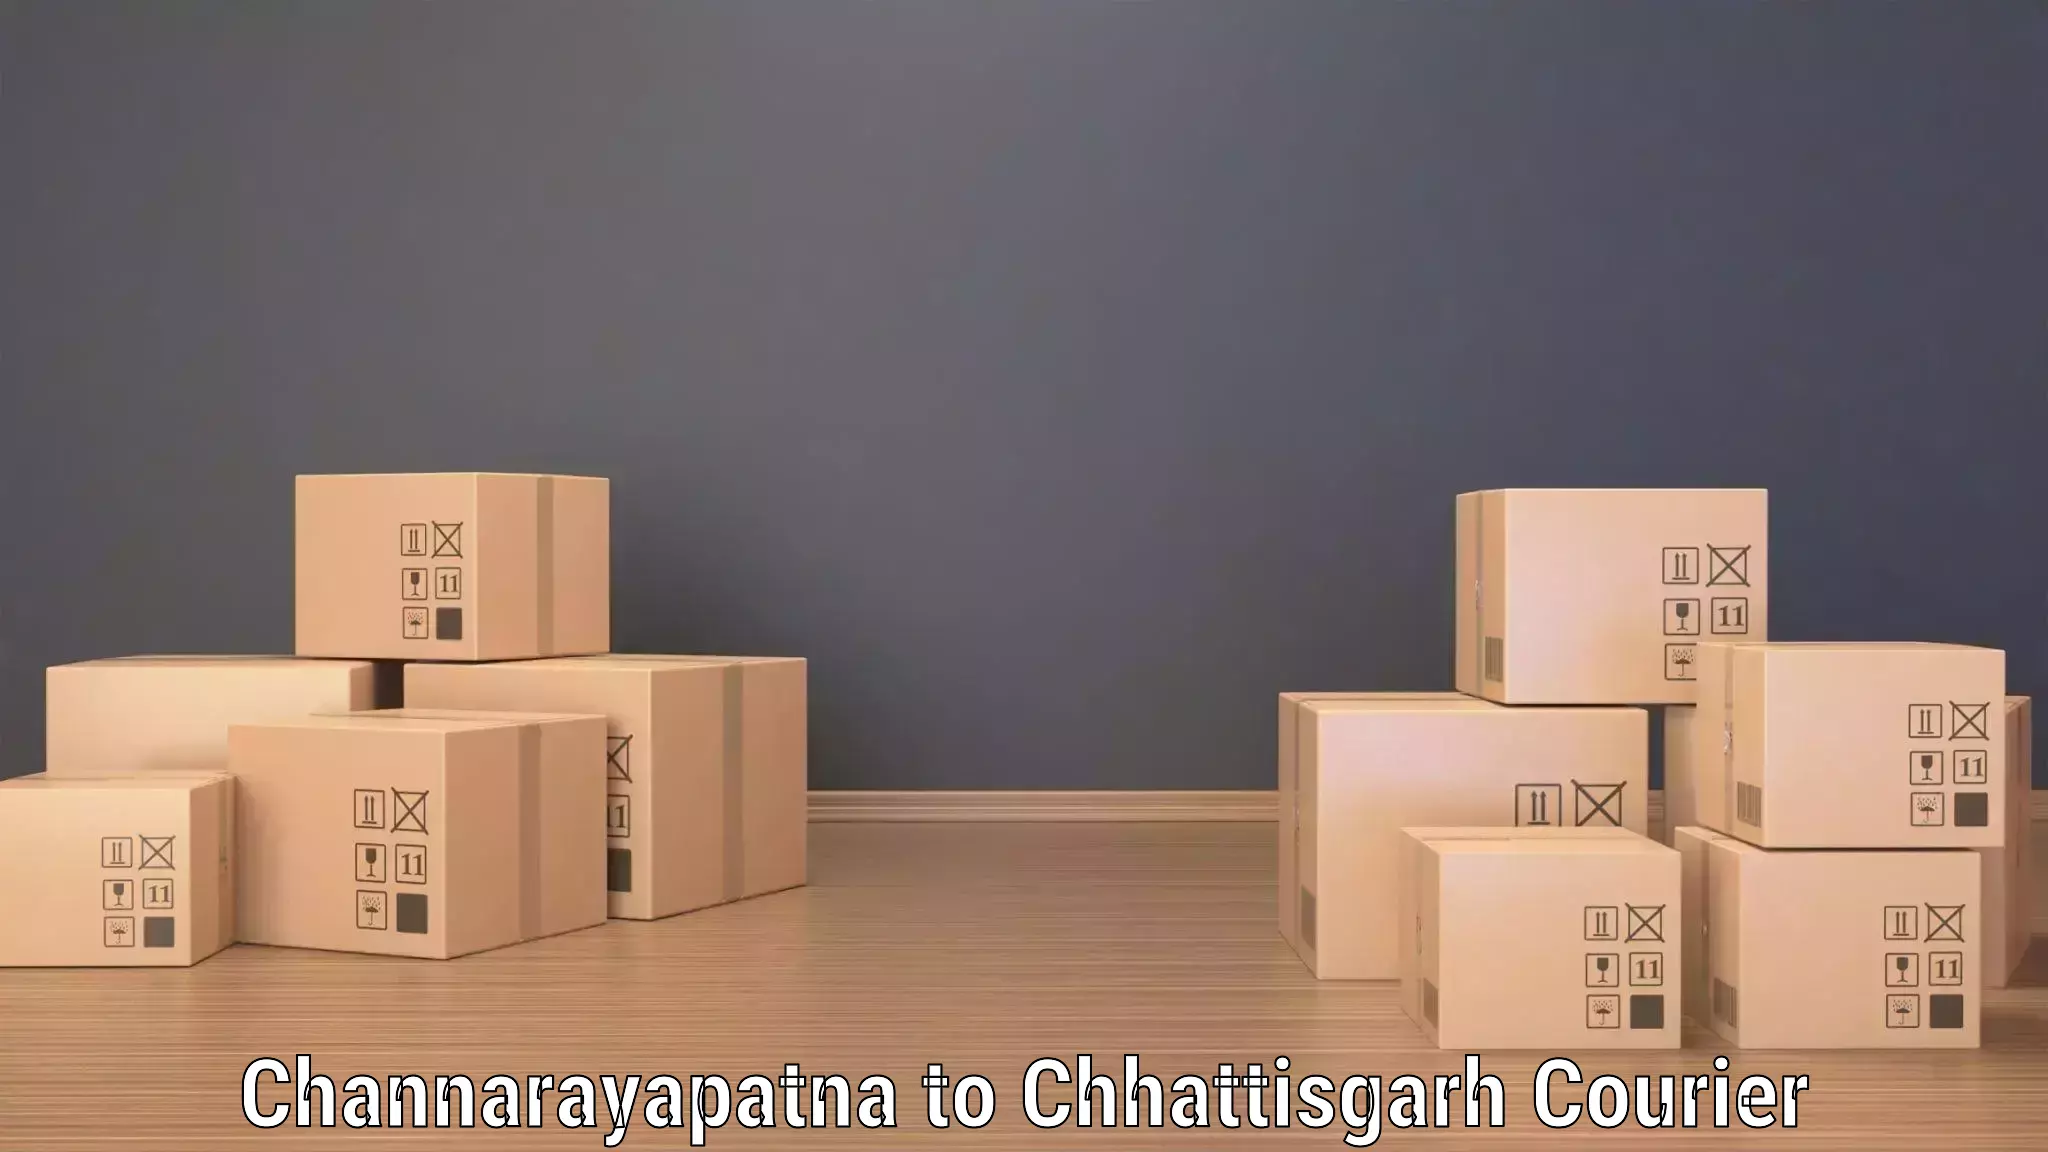 Express mail service in Channarayapatna to Raigarh